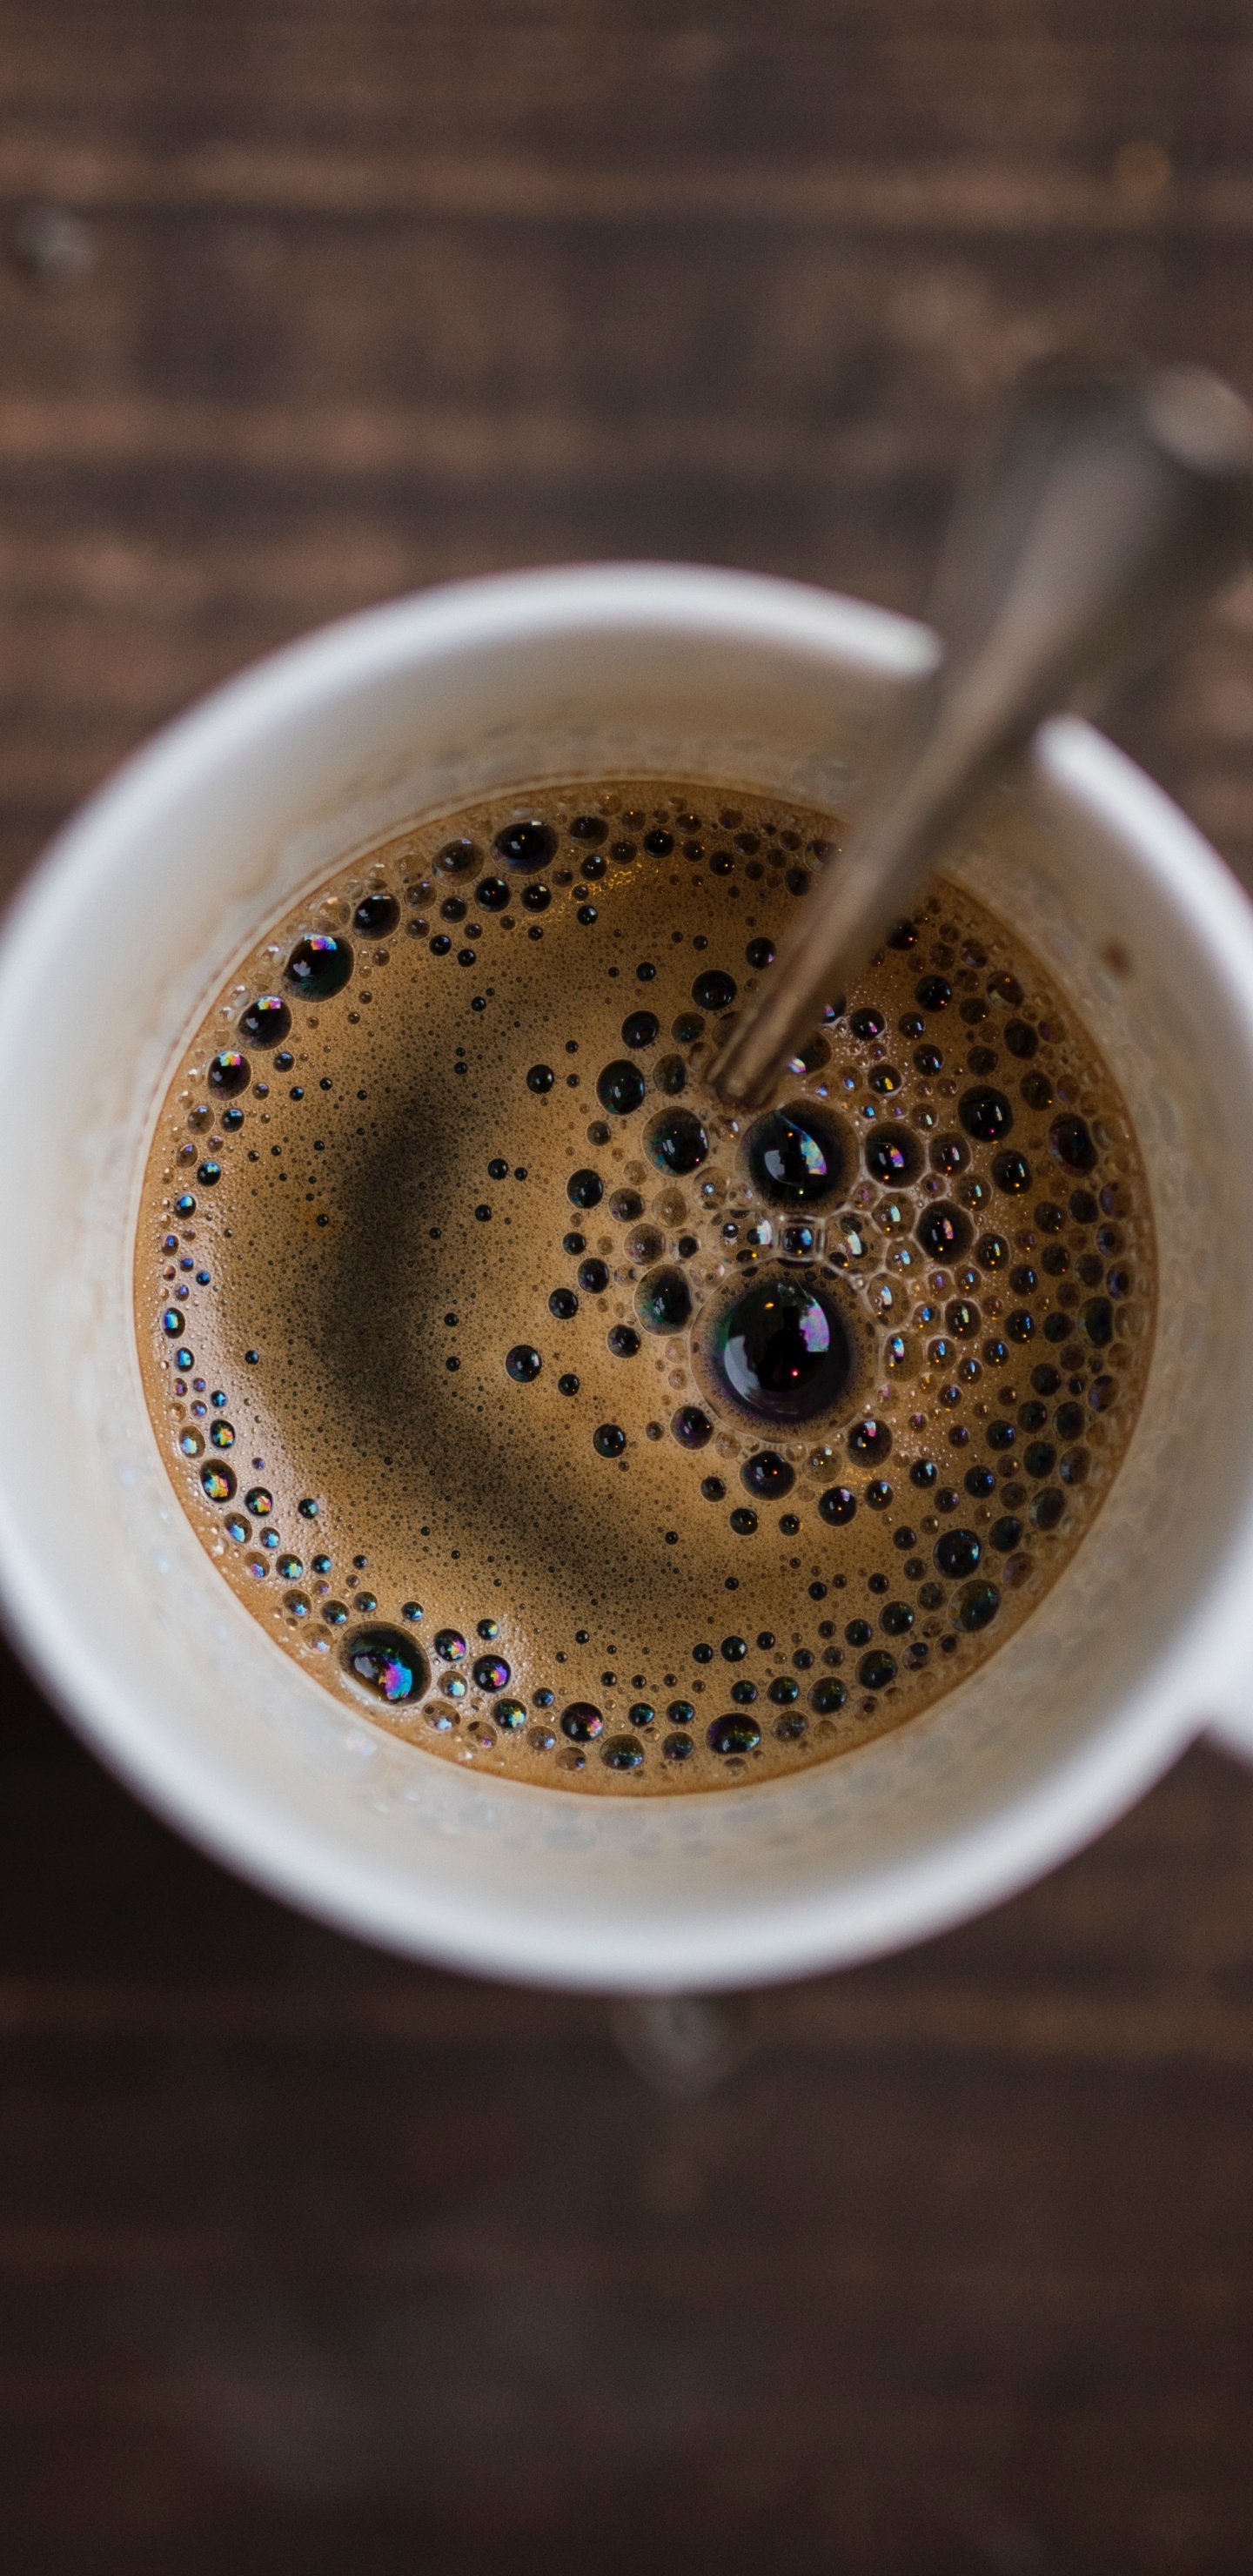 速溶咖啡, 咖啡馆, 咖啡因, 咖啡杯, 浓缩咖啡 壁纸 1440x2960 允许